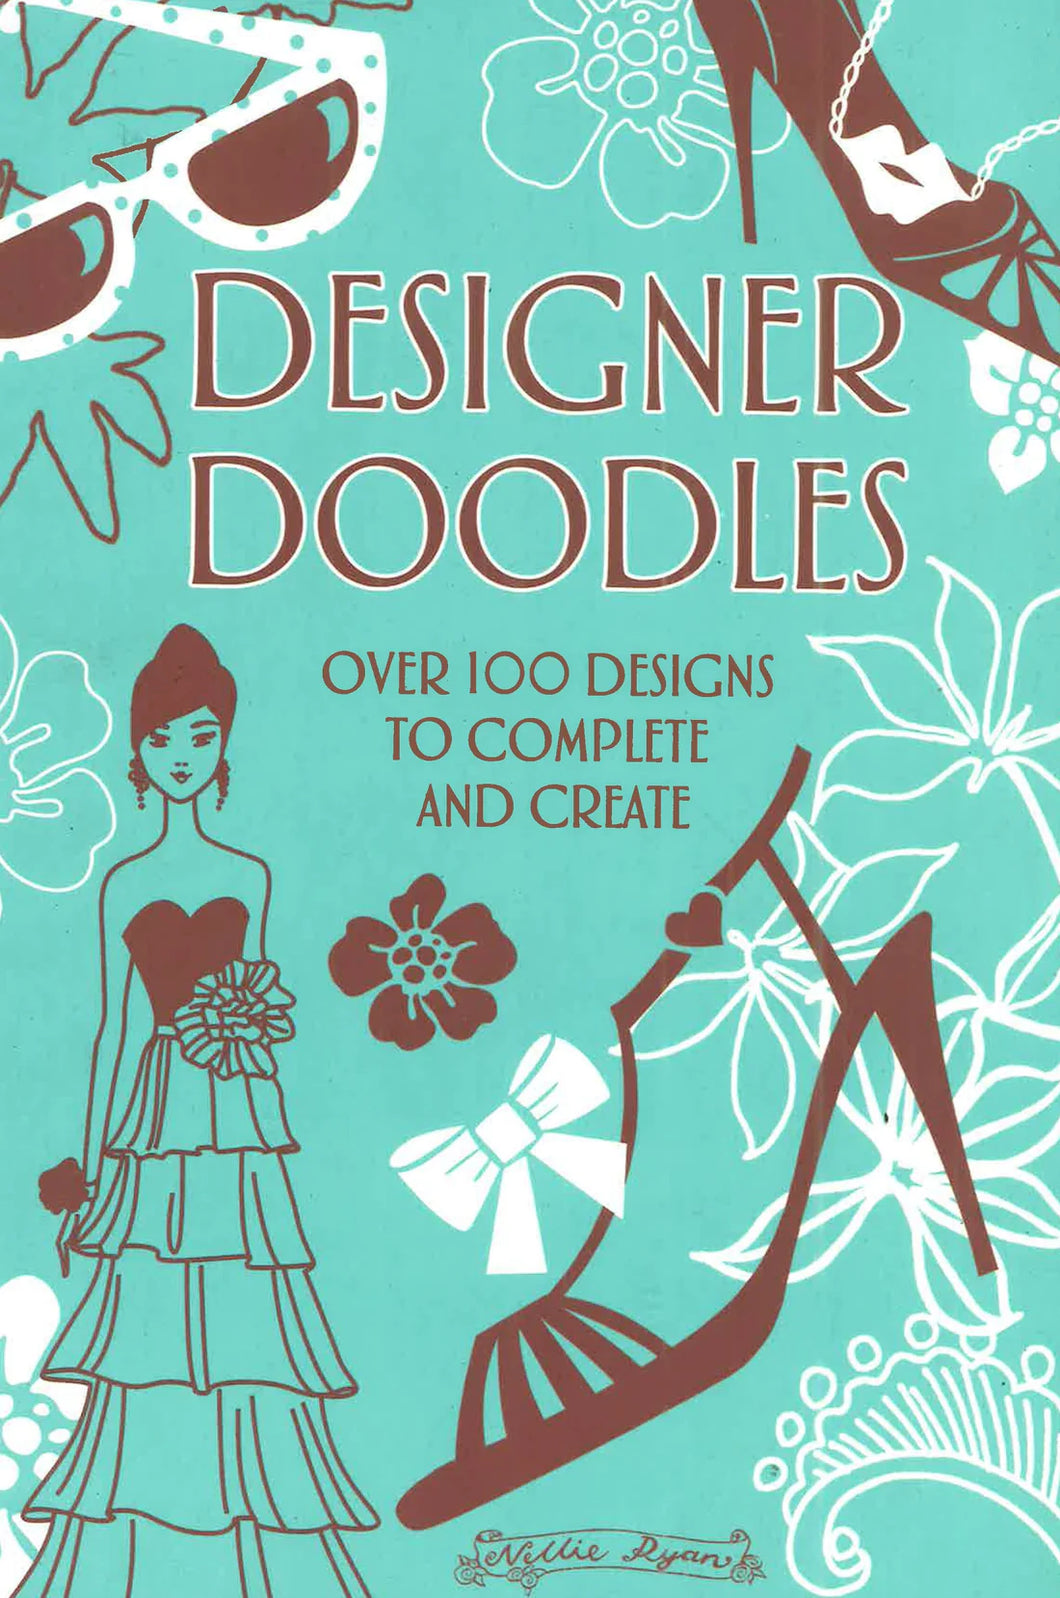 Designer Doodles